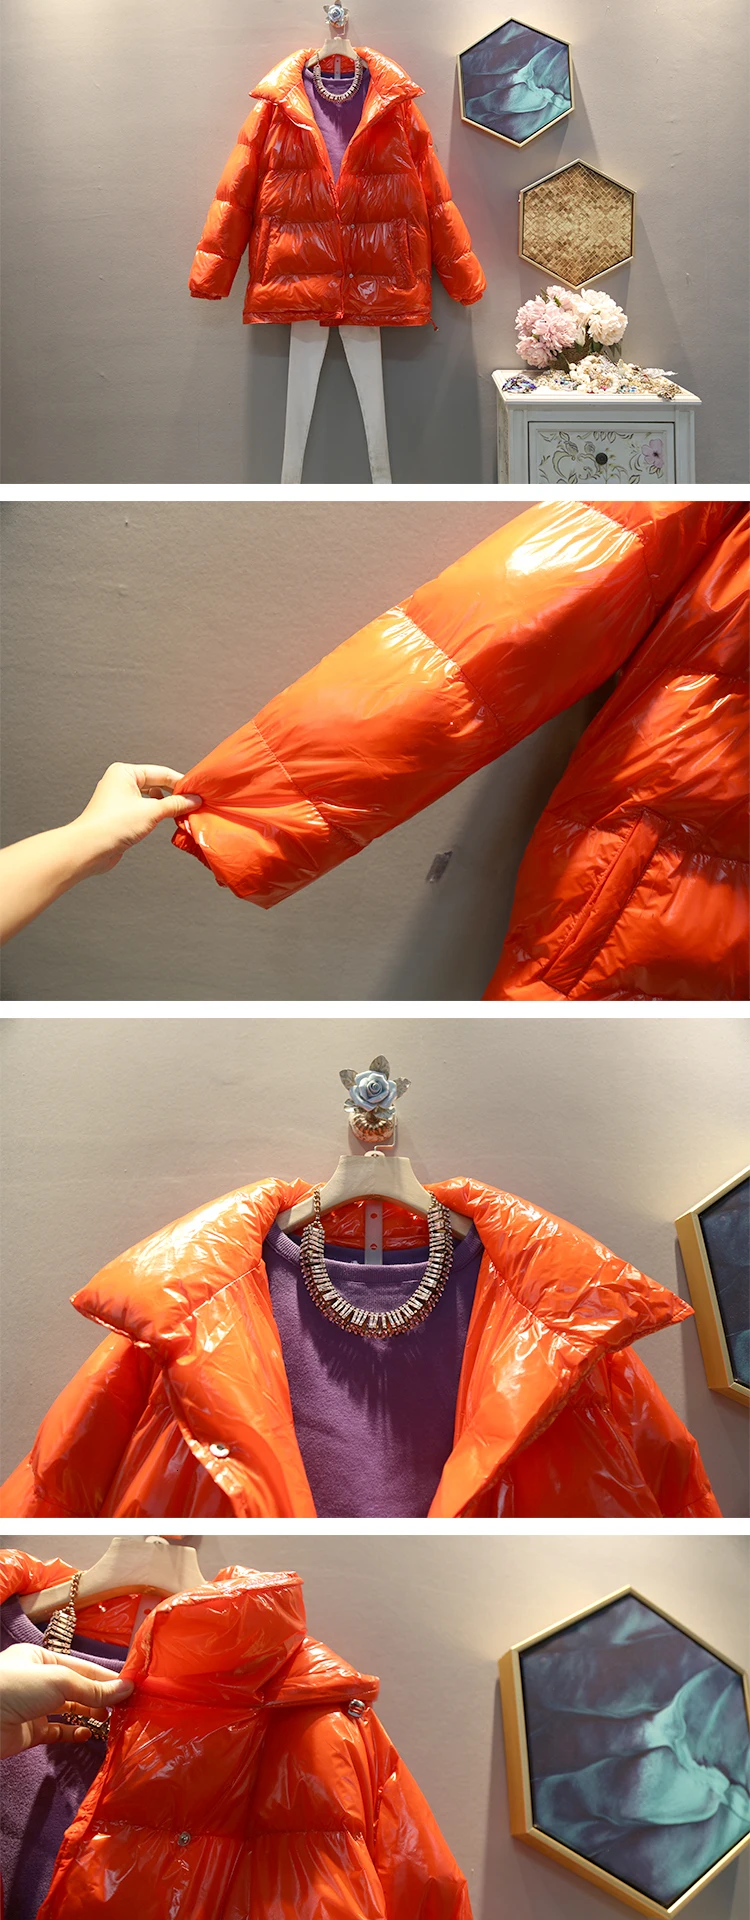 Цин МО размера плюс женские зимние парки женское глянцевое пальто толстое теплое пальто с хлопковой подкладкой черное оранжевое Красное Желтое ZQY2101